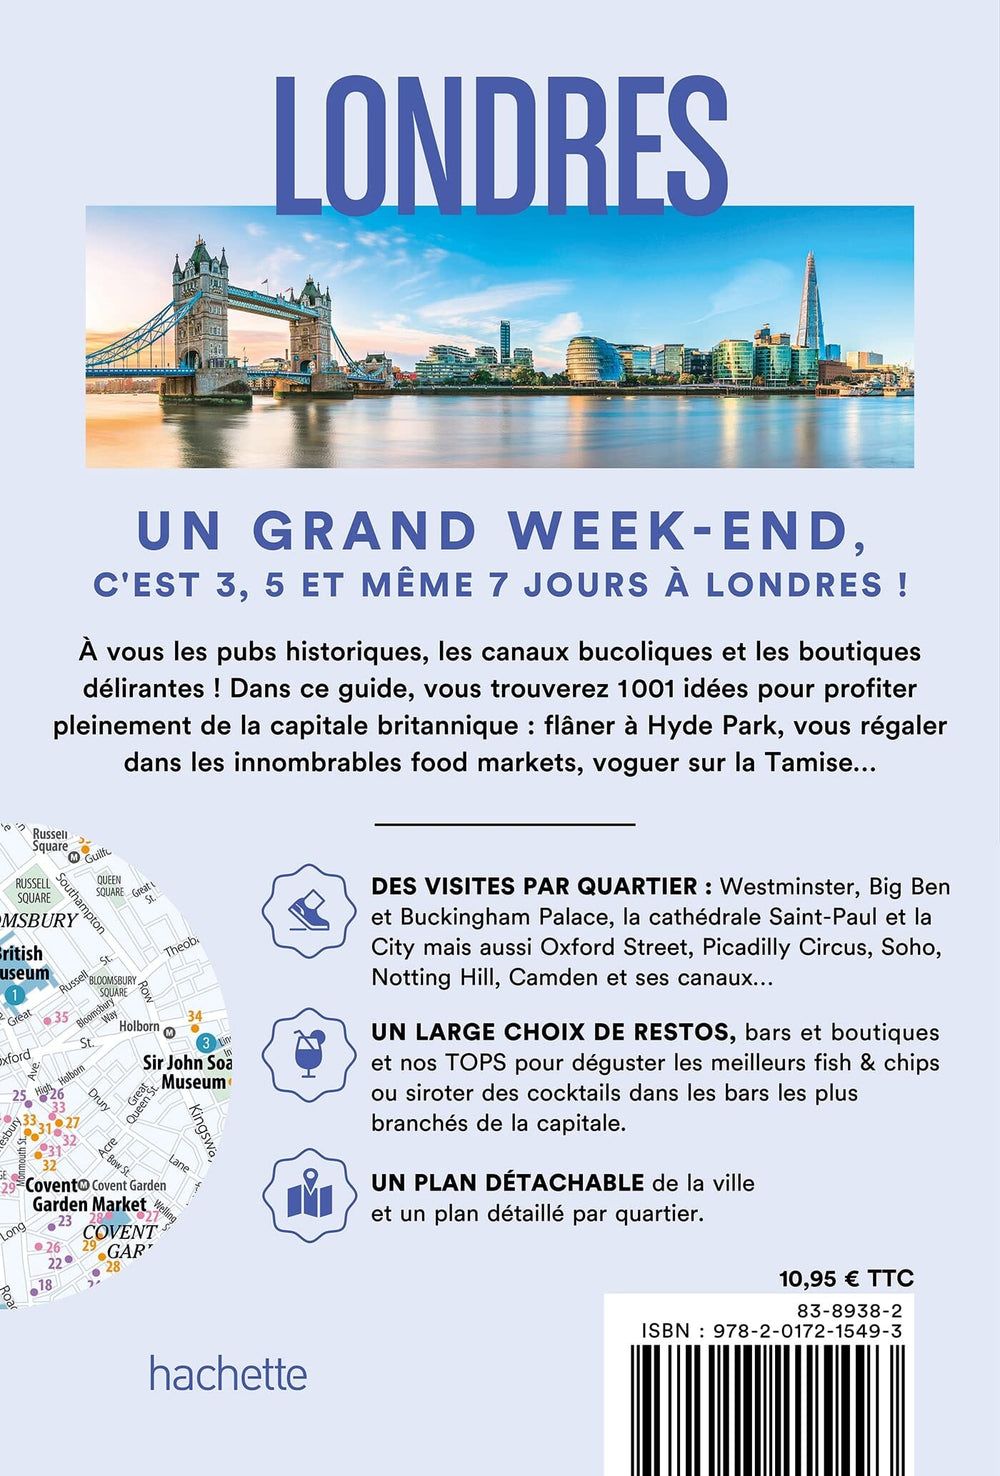 Guide de voyage de poche - Un Grand Week-end à Londres 2023 | Hachette guide petit format Hachette 